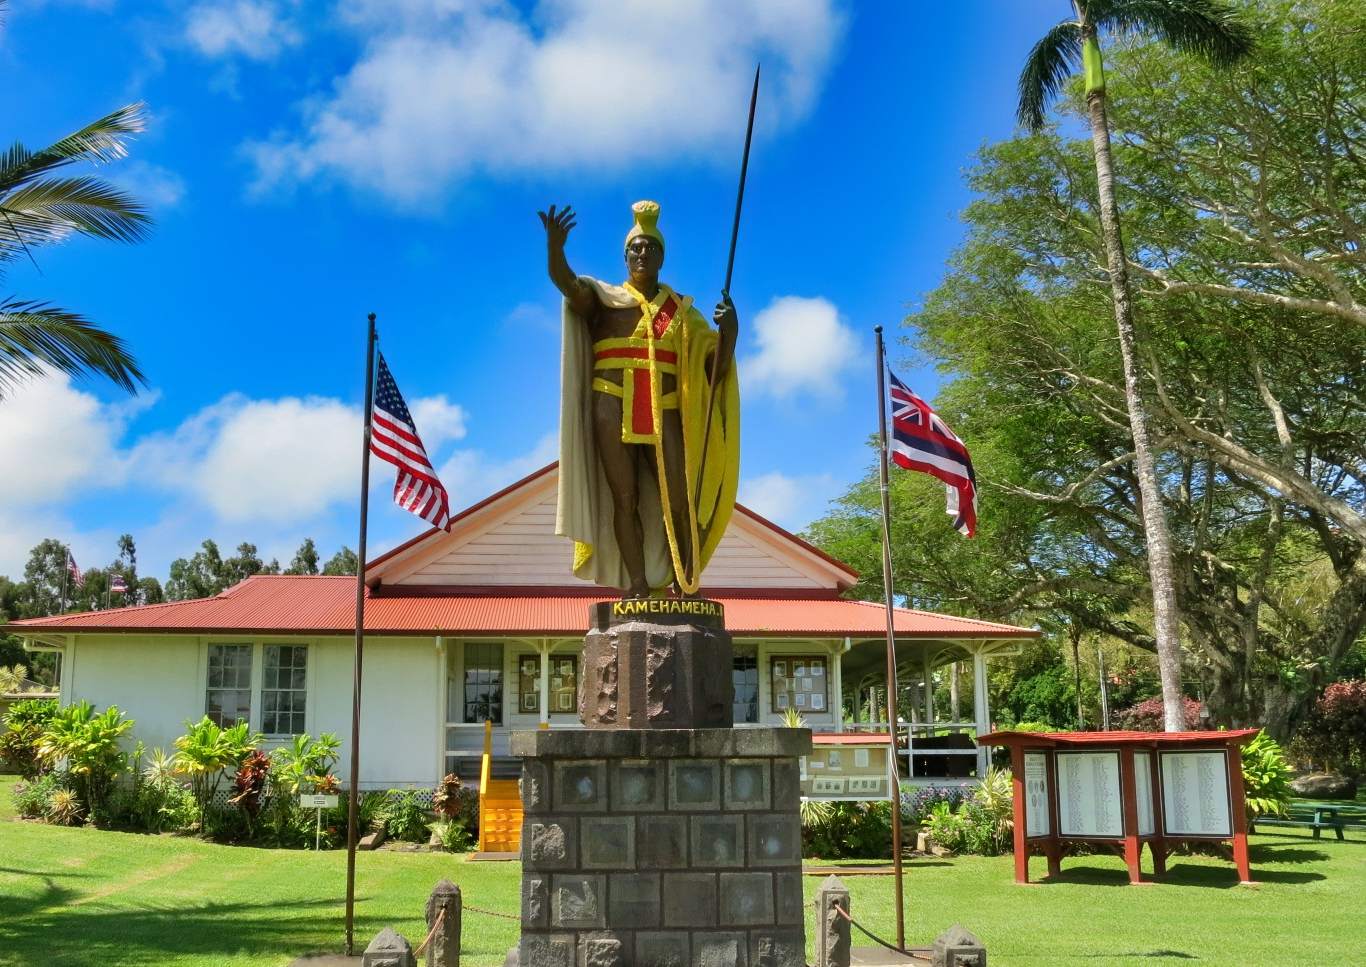 King Kamehameha statue in Kapaau